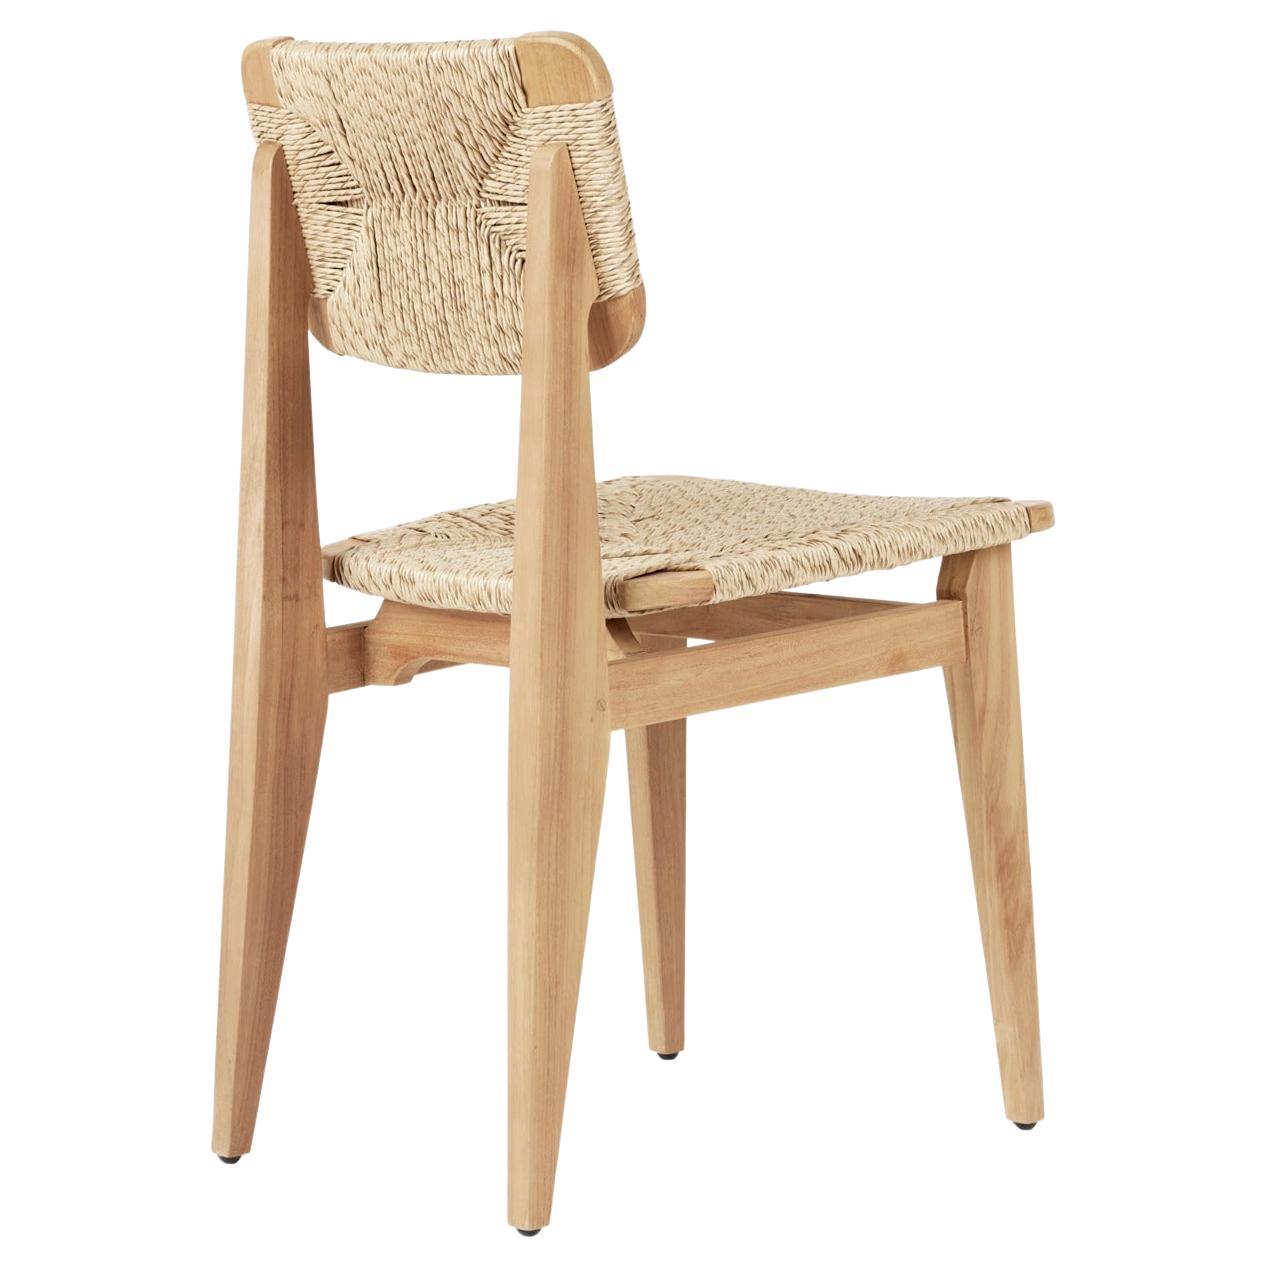 La C-Chair est optimisée pour l'extérieur, tant au niveau de l'ergonomie que de la matérialité. Les proportions ont été ajustées pour maximiser le confort et les cadres ont été soigneusement fabriqués avec une menuiserie traditionnelle en teck de